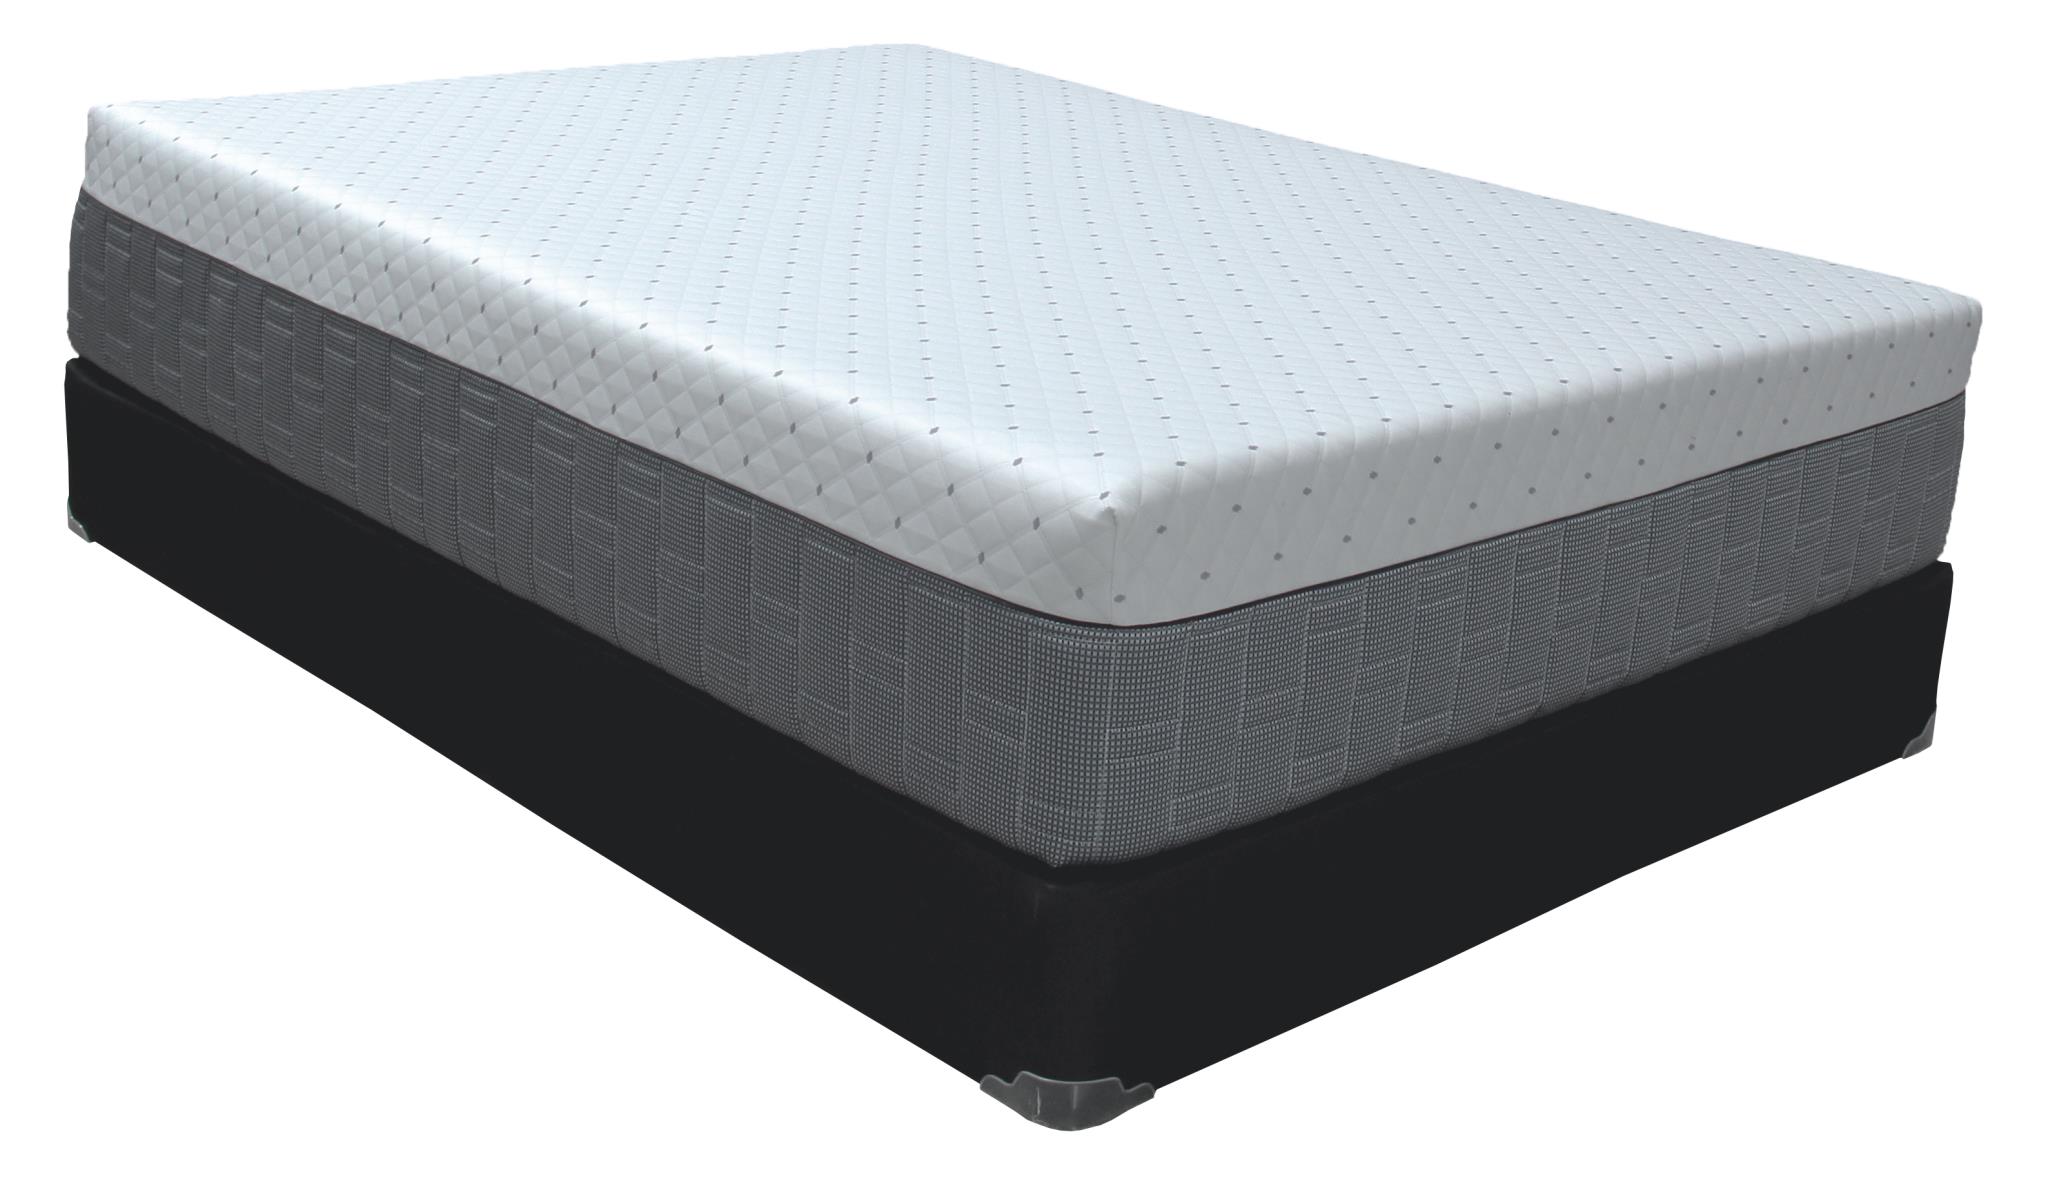 sleeptronic queen mattress reviews